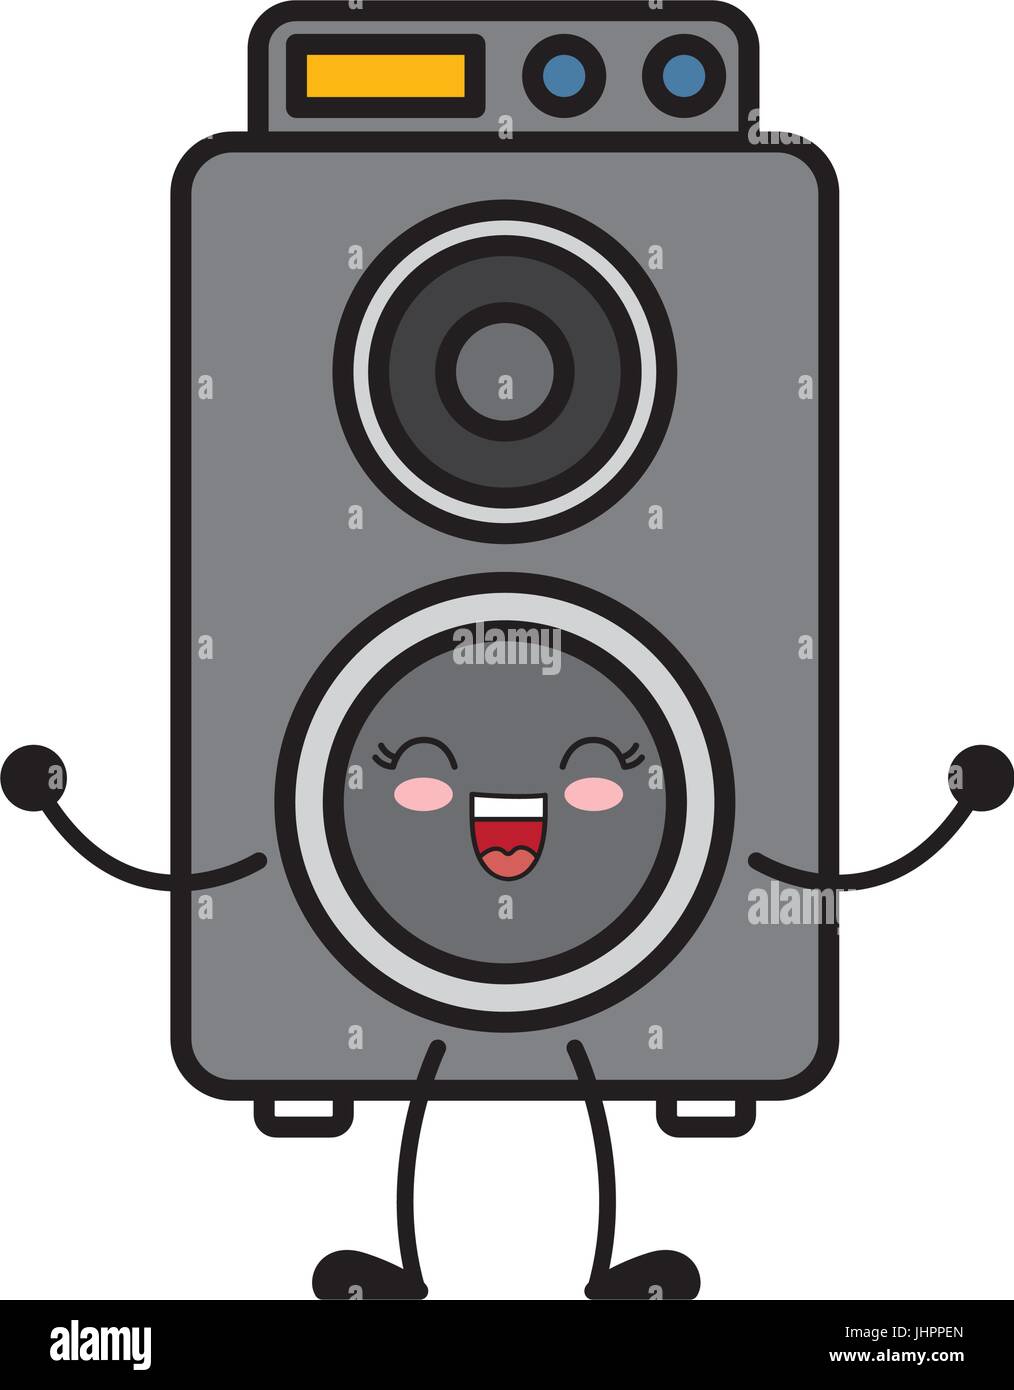 speaker box icon Stock Vector Image & Art - Alamy